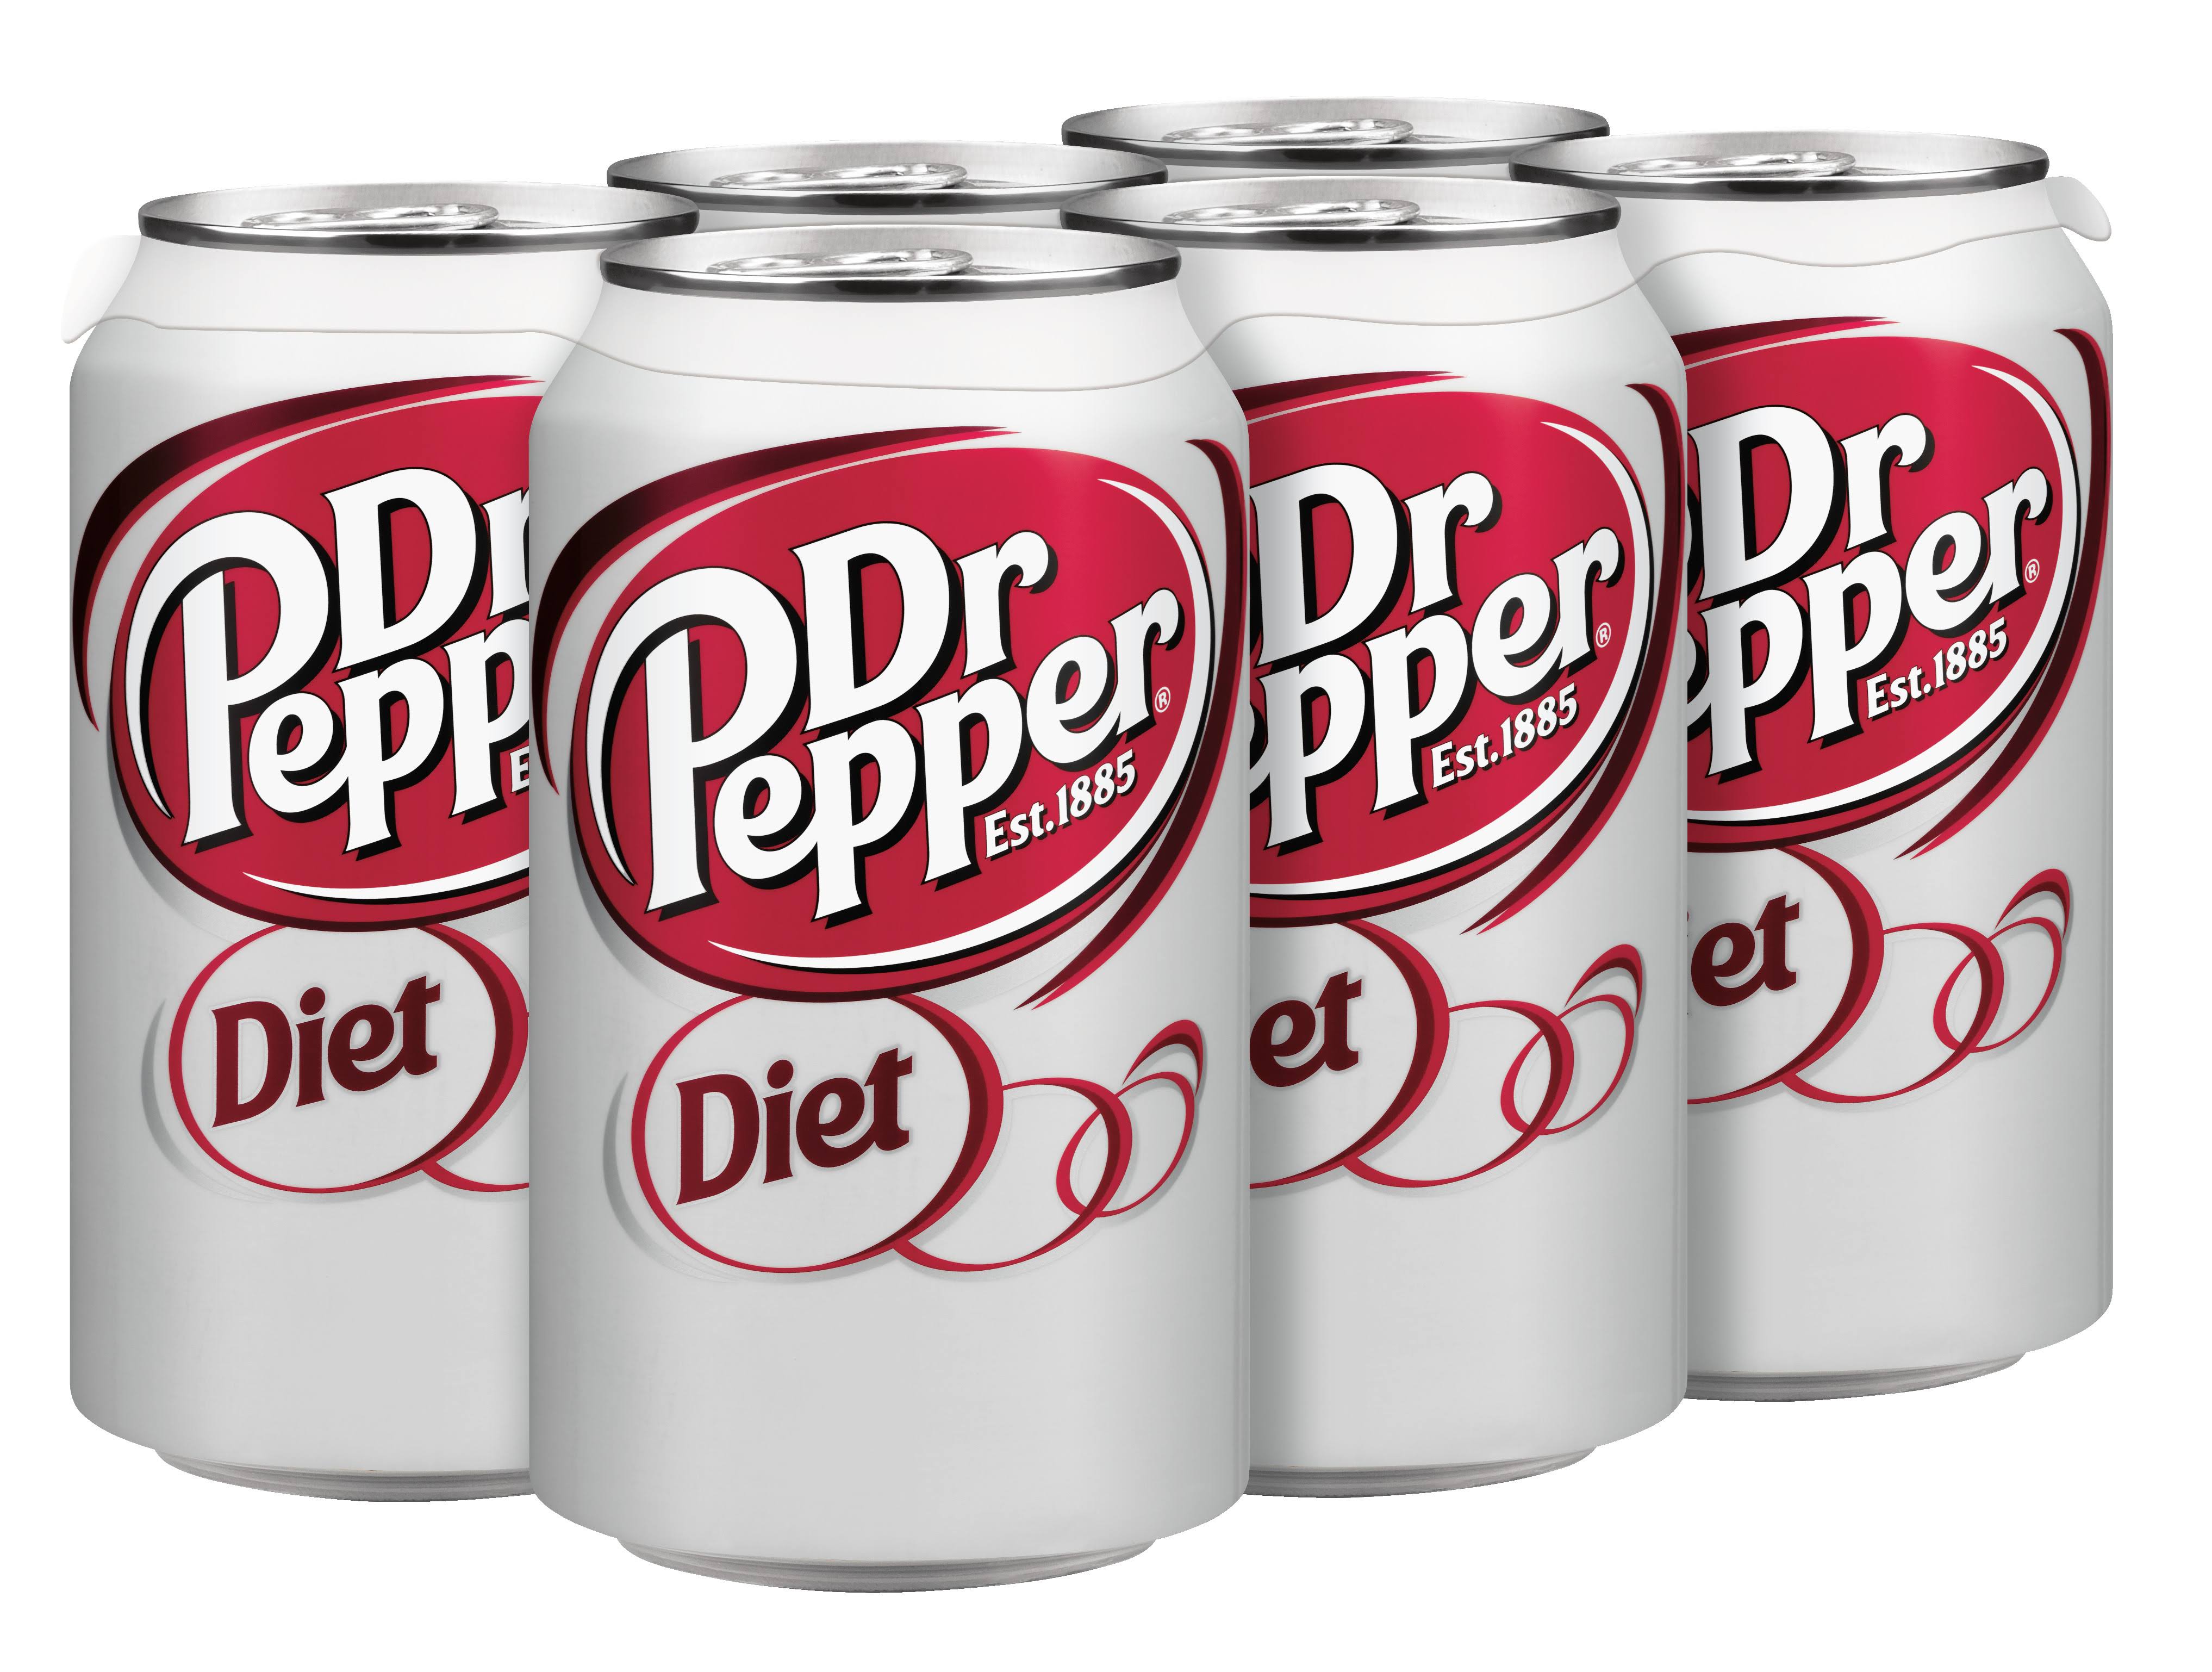 Diet Dr Pepper Soda - 12 oz, 6 pack